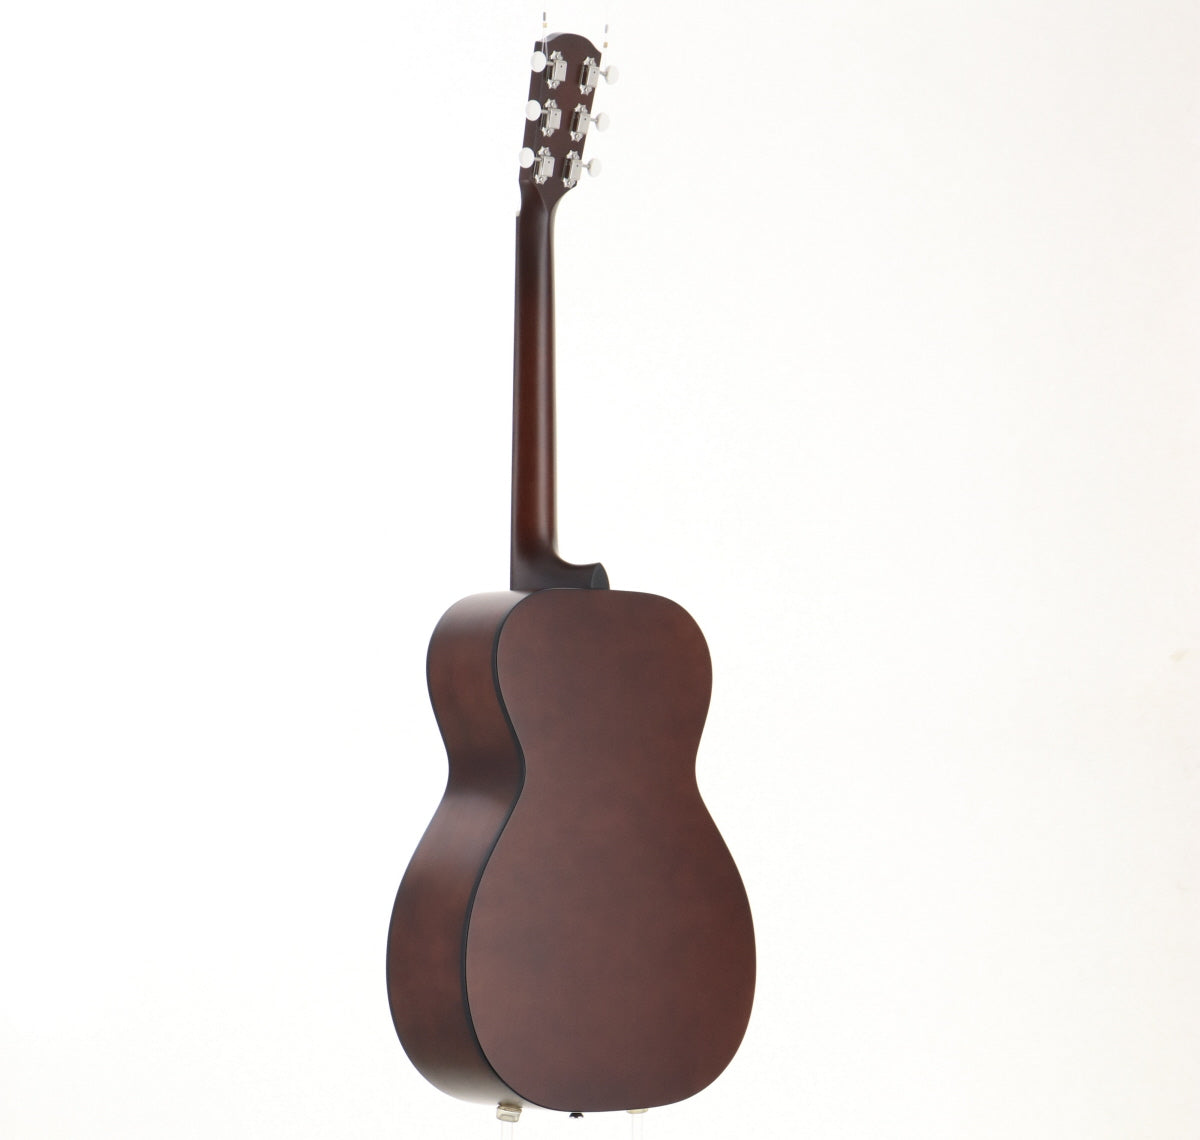 [SN 85698] USED K.Yairi / YFP-02 DM [Veneer Top/Short Scale][Made in 2021] Yairi Acoustic Guitar [08]